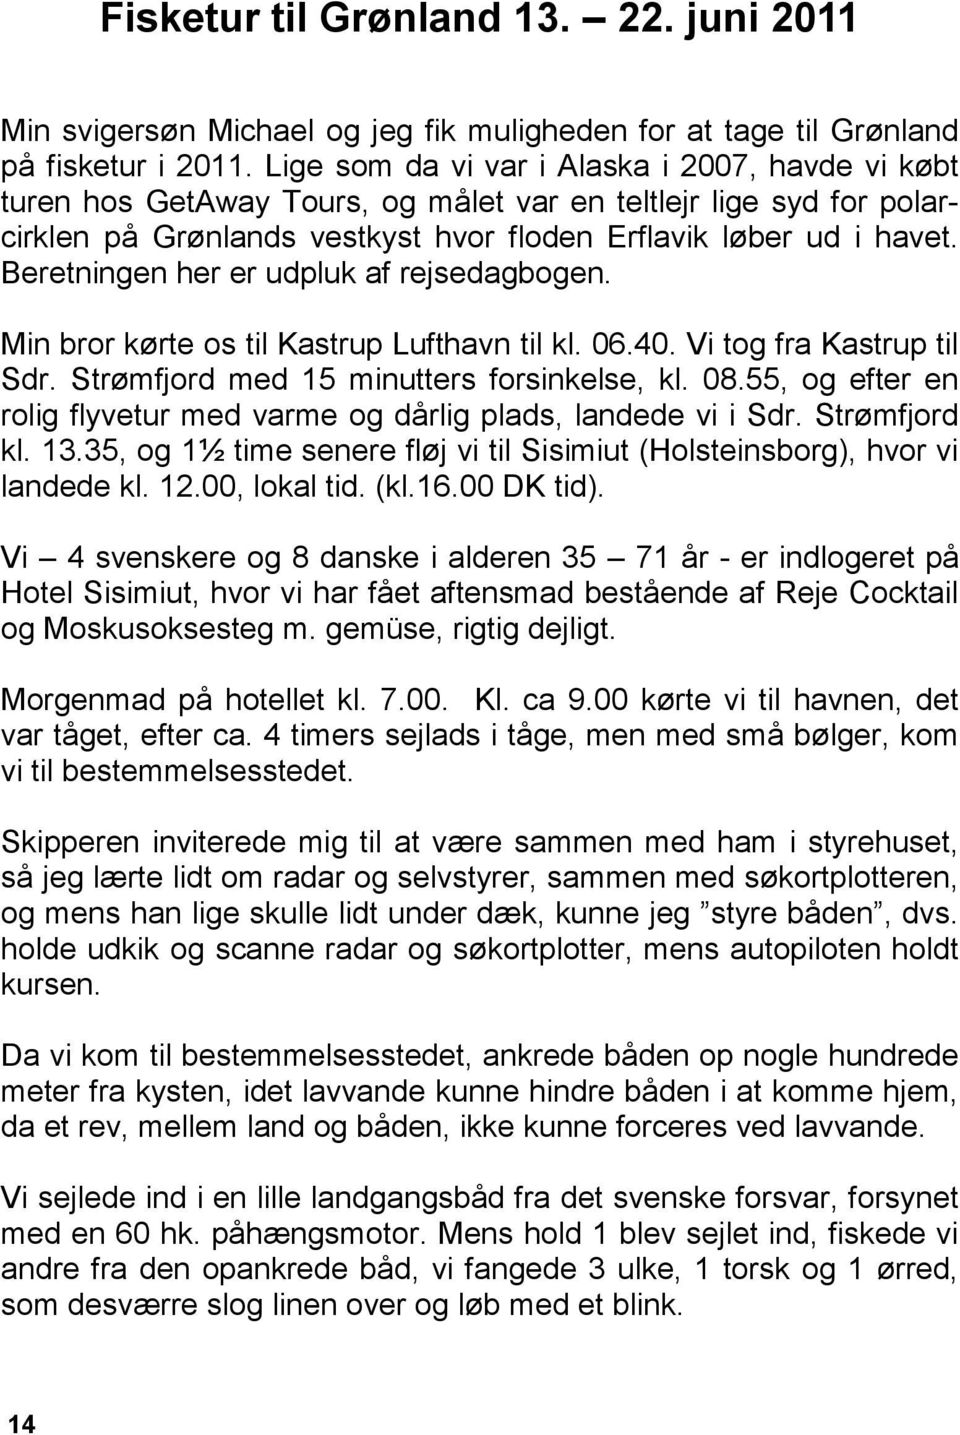 Beretningen her er udpluk af rejsedagbogen. Min bror kørte os til Kastrup Lufthavn til kl. 06.40. Vi tog fra Kastrup til Sdr. Strømfjord med 15 minutters forsinkelse, kl. 08.